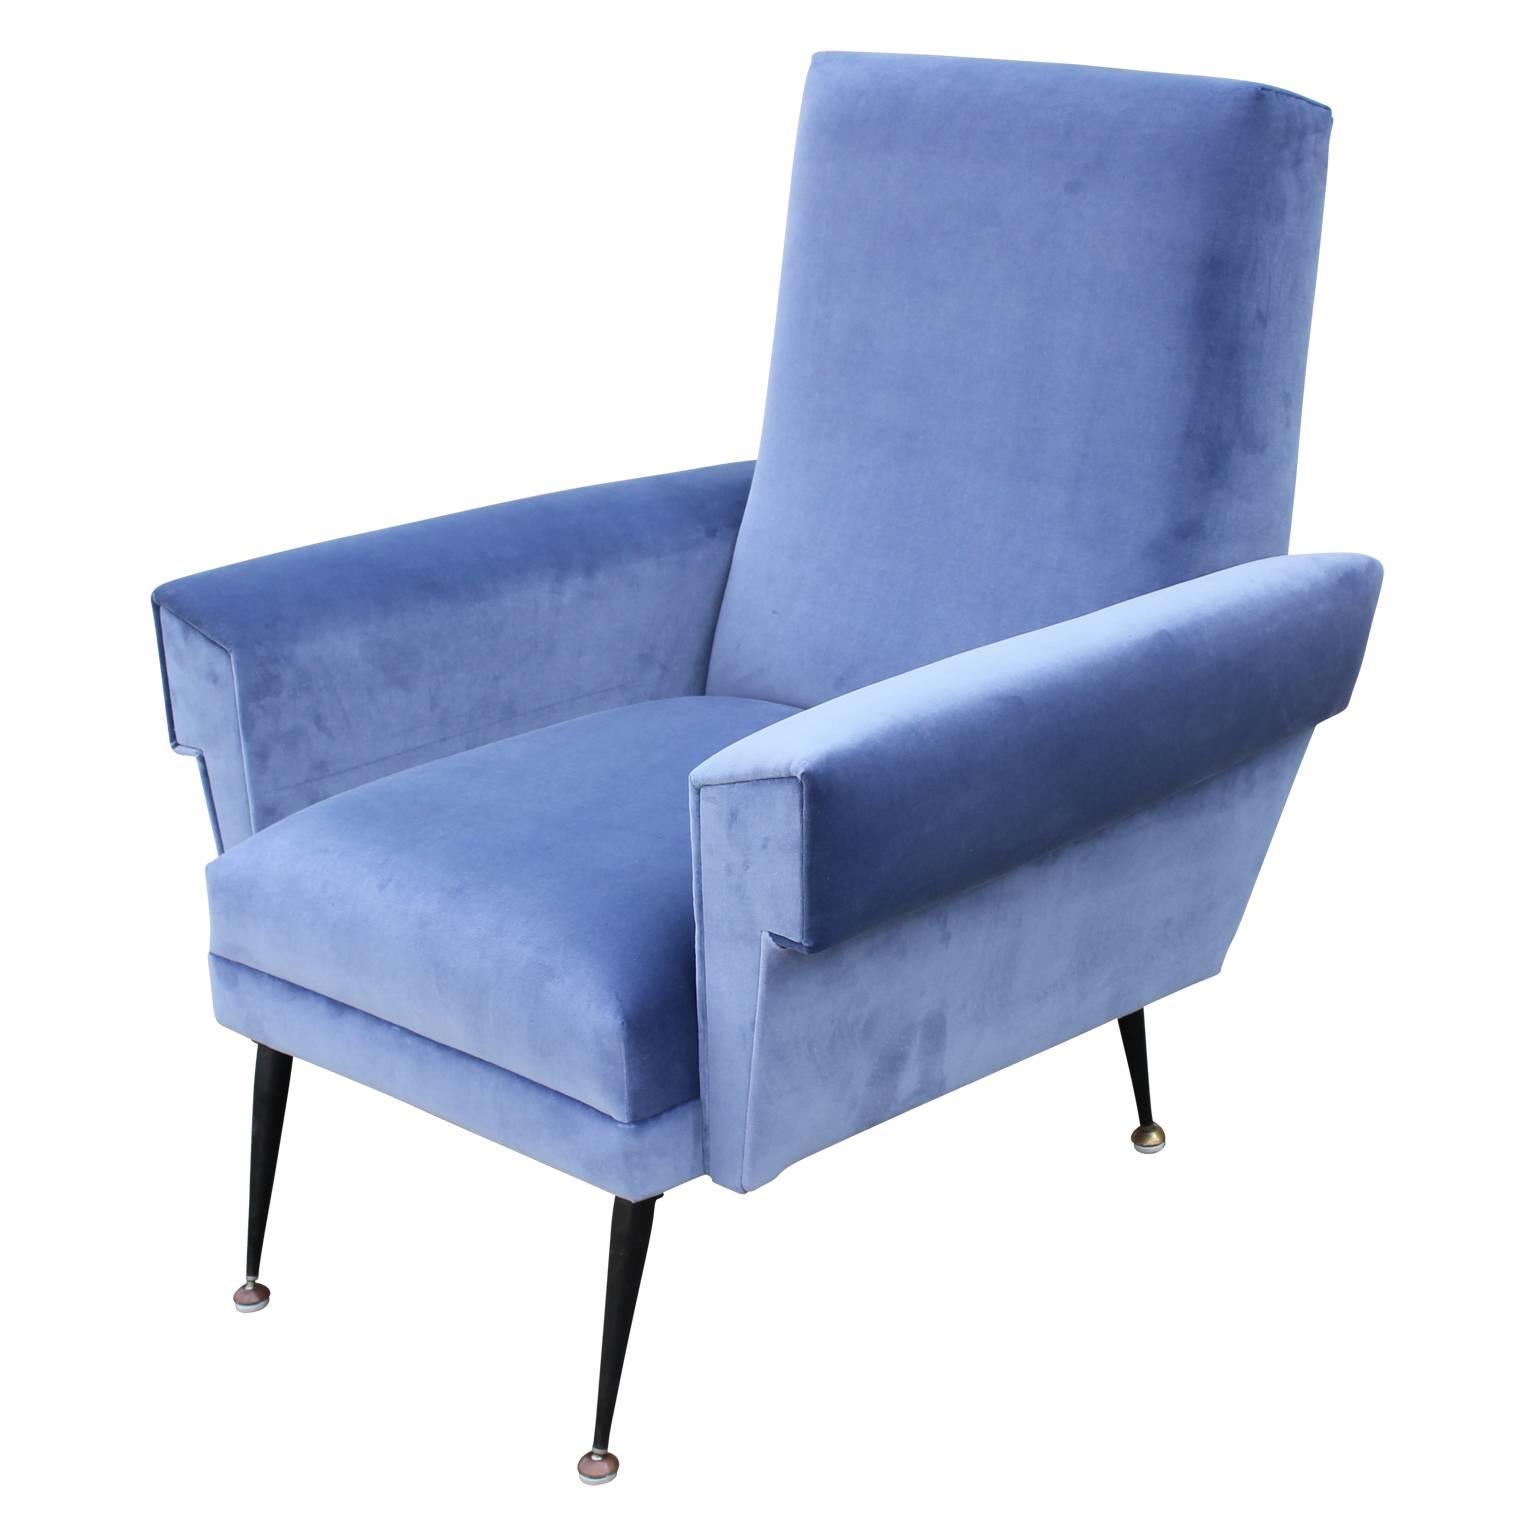 Mid-20th Century Pair of Modern Arflex Style Italian Lounge Chairs in Blue Kravet Velvet